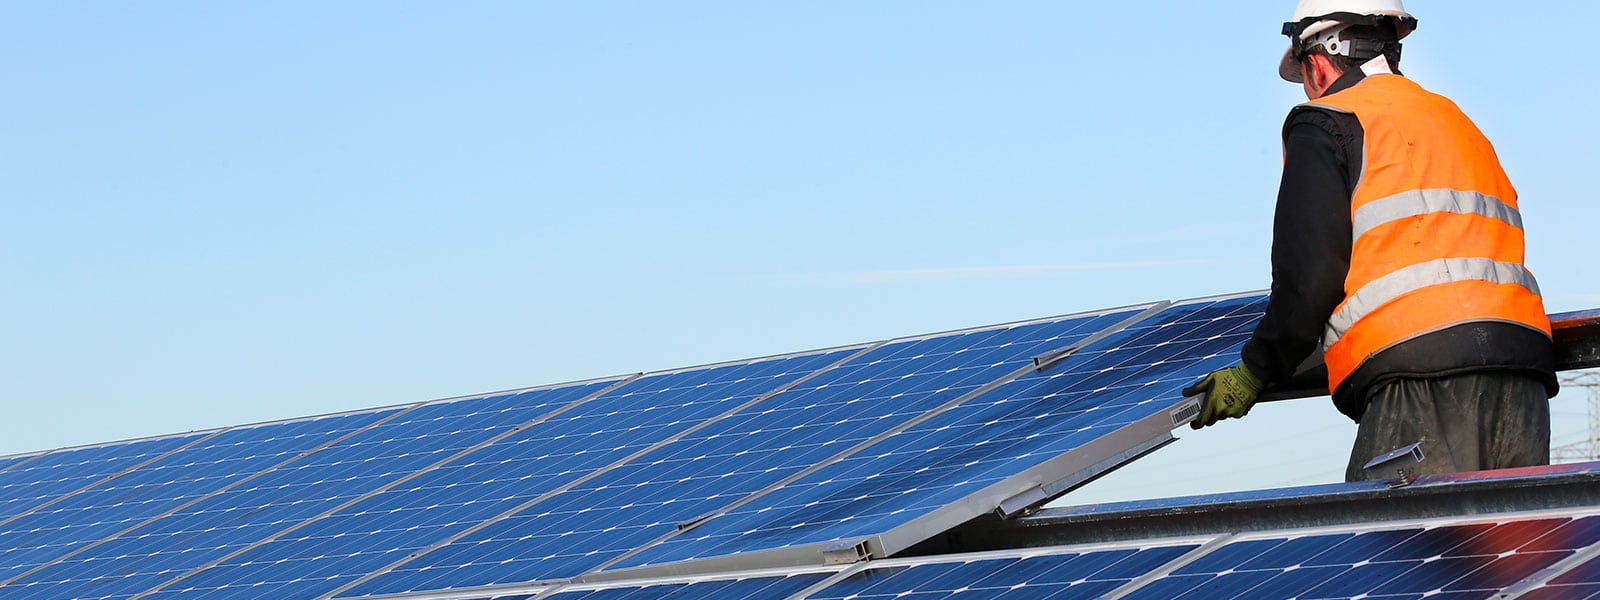 Nouvelles du soleil en Bouches-du-Rhône: construction de la centrale solaire photovoltaïque d'Artillerie